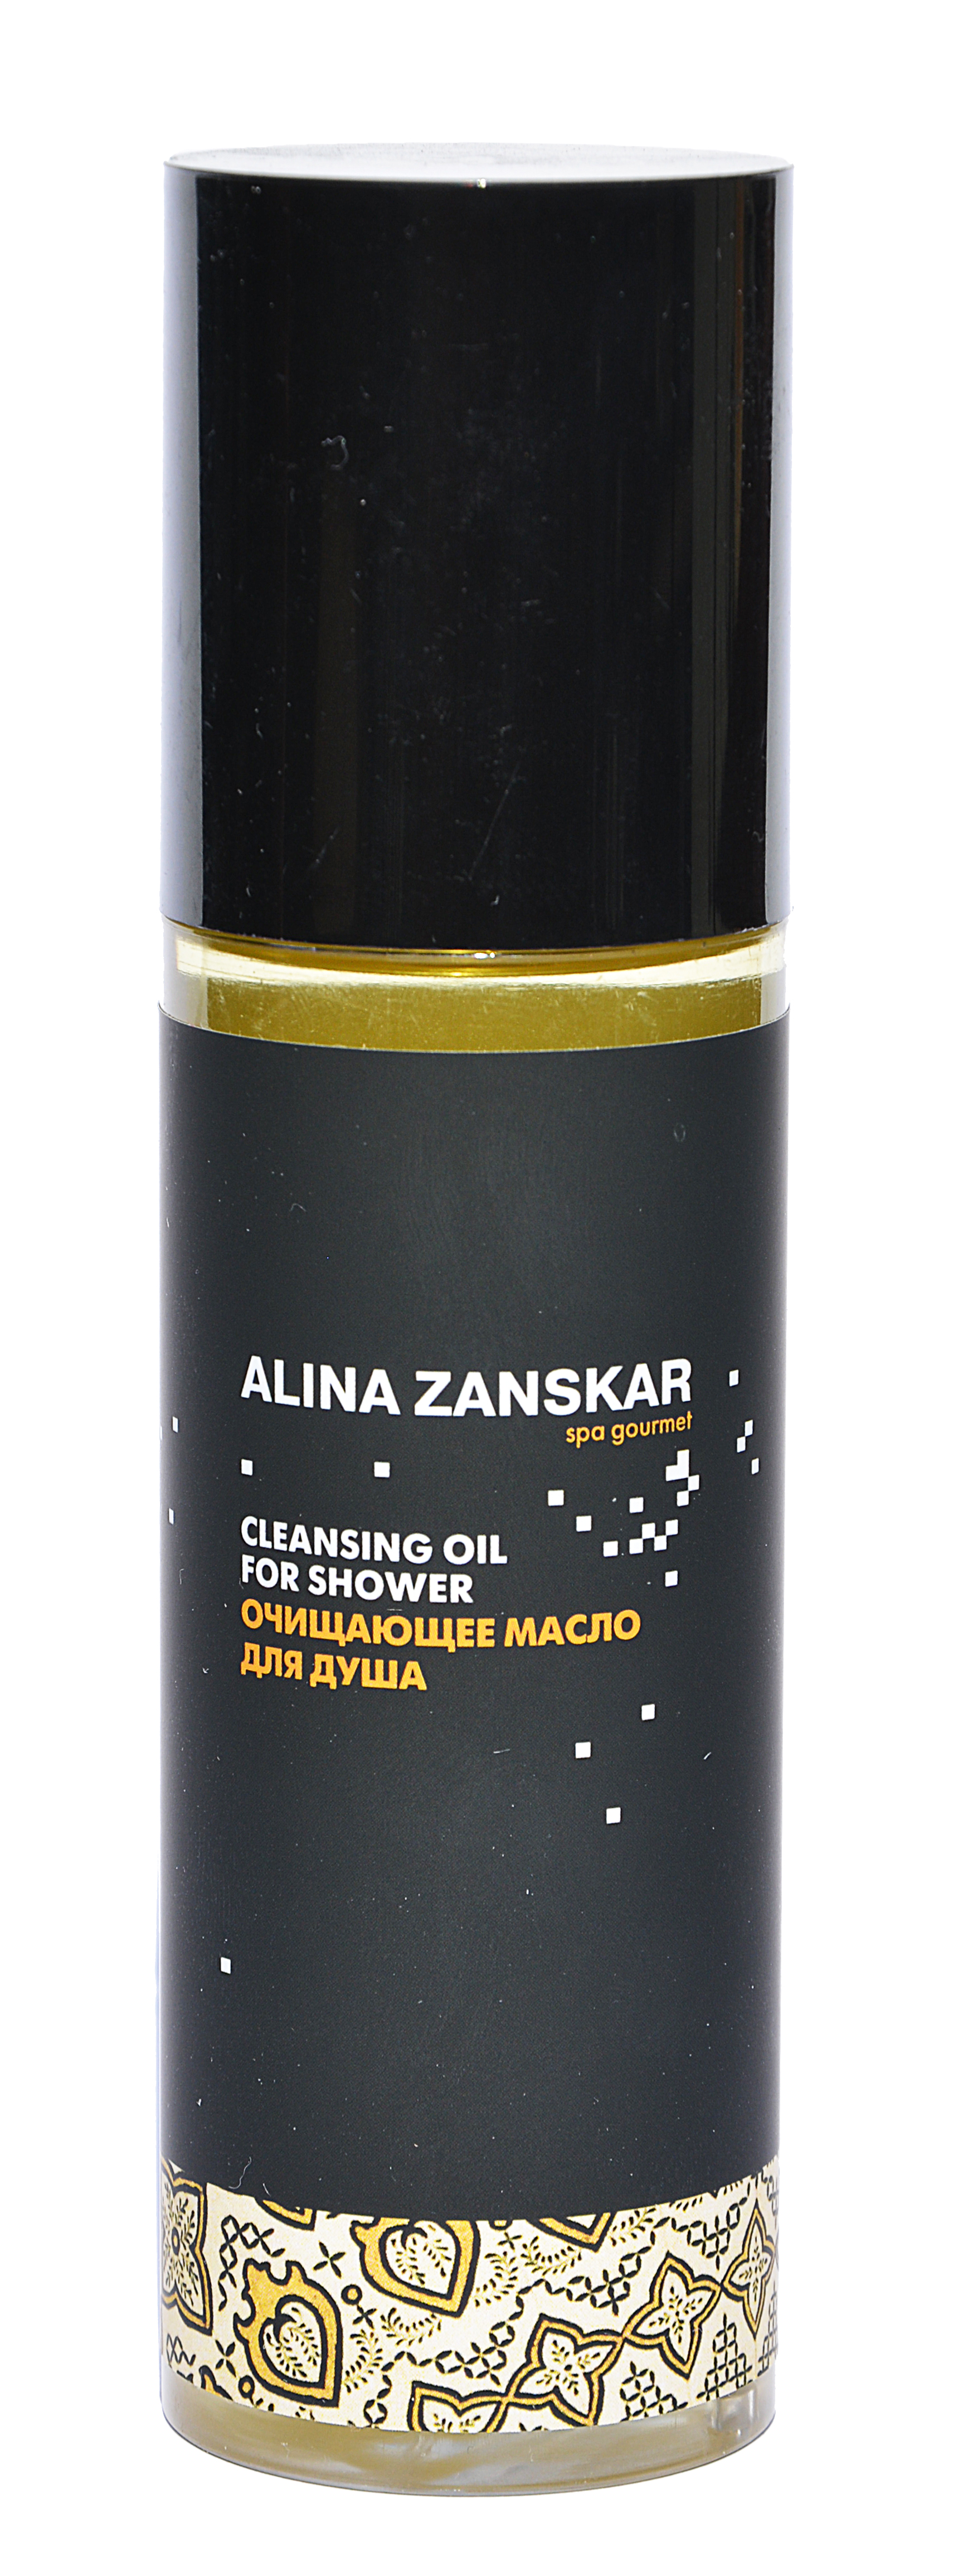 Очищающее масло для душа Alina Zanskar в интернет магазине косметики на официальном сайте